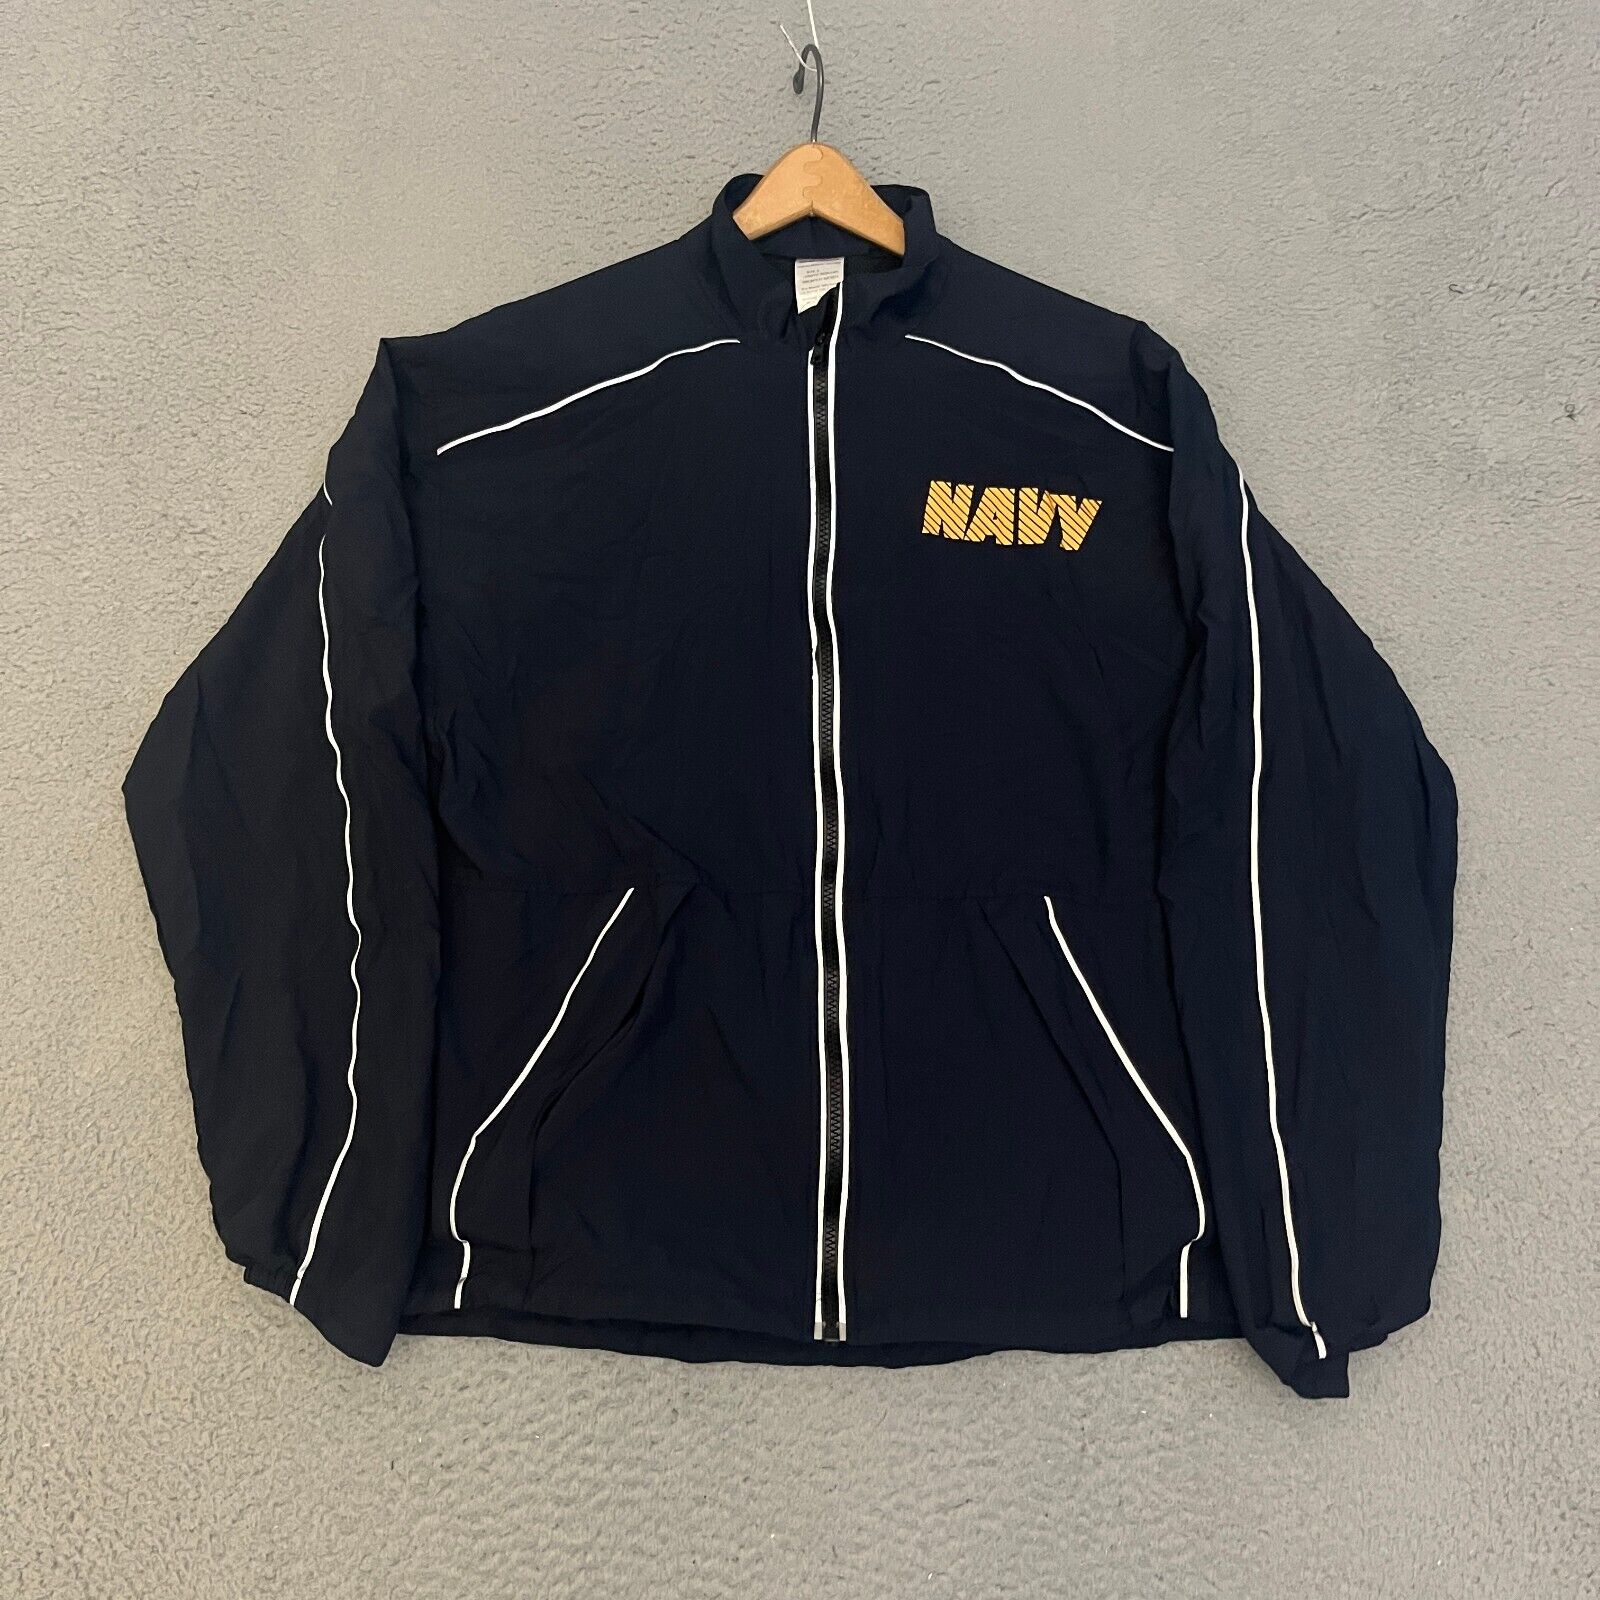 US Navy Jacket Mens Size Small Blue Nylon